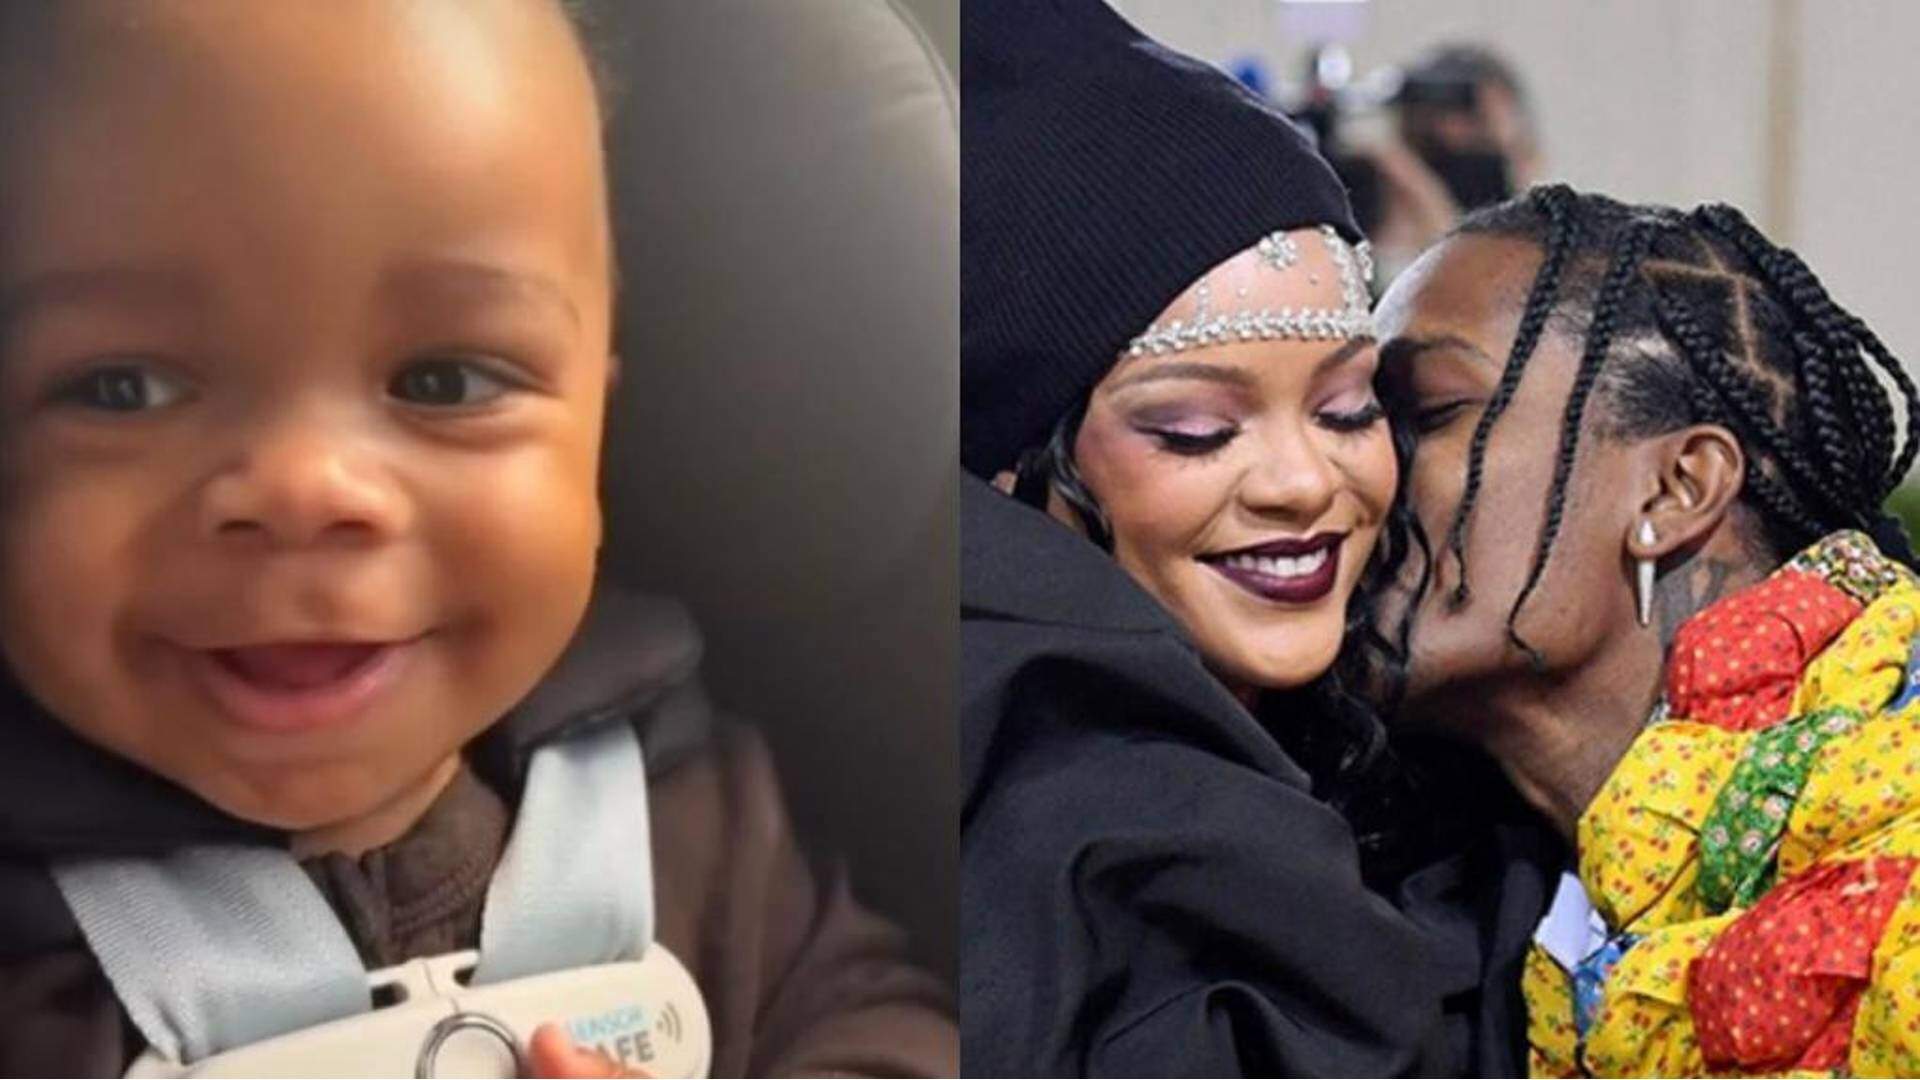 Em data especial, Rihanna compartilha álbum de sua família e detalhe rouba a cena nas fotos - Metropolitana FM